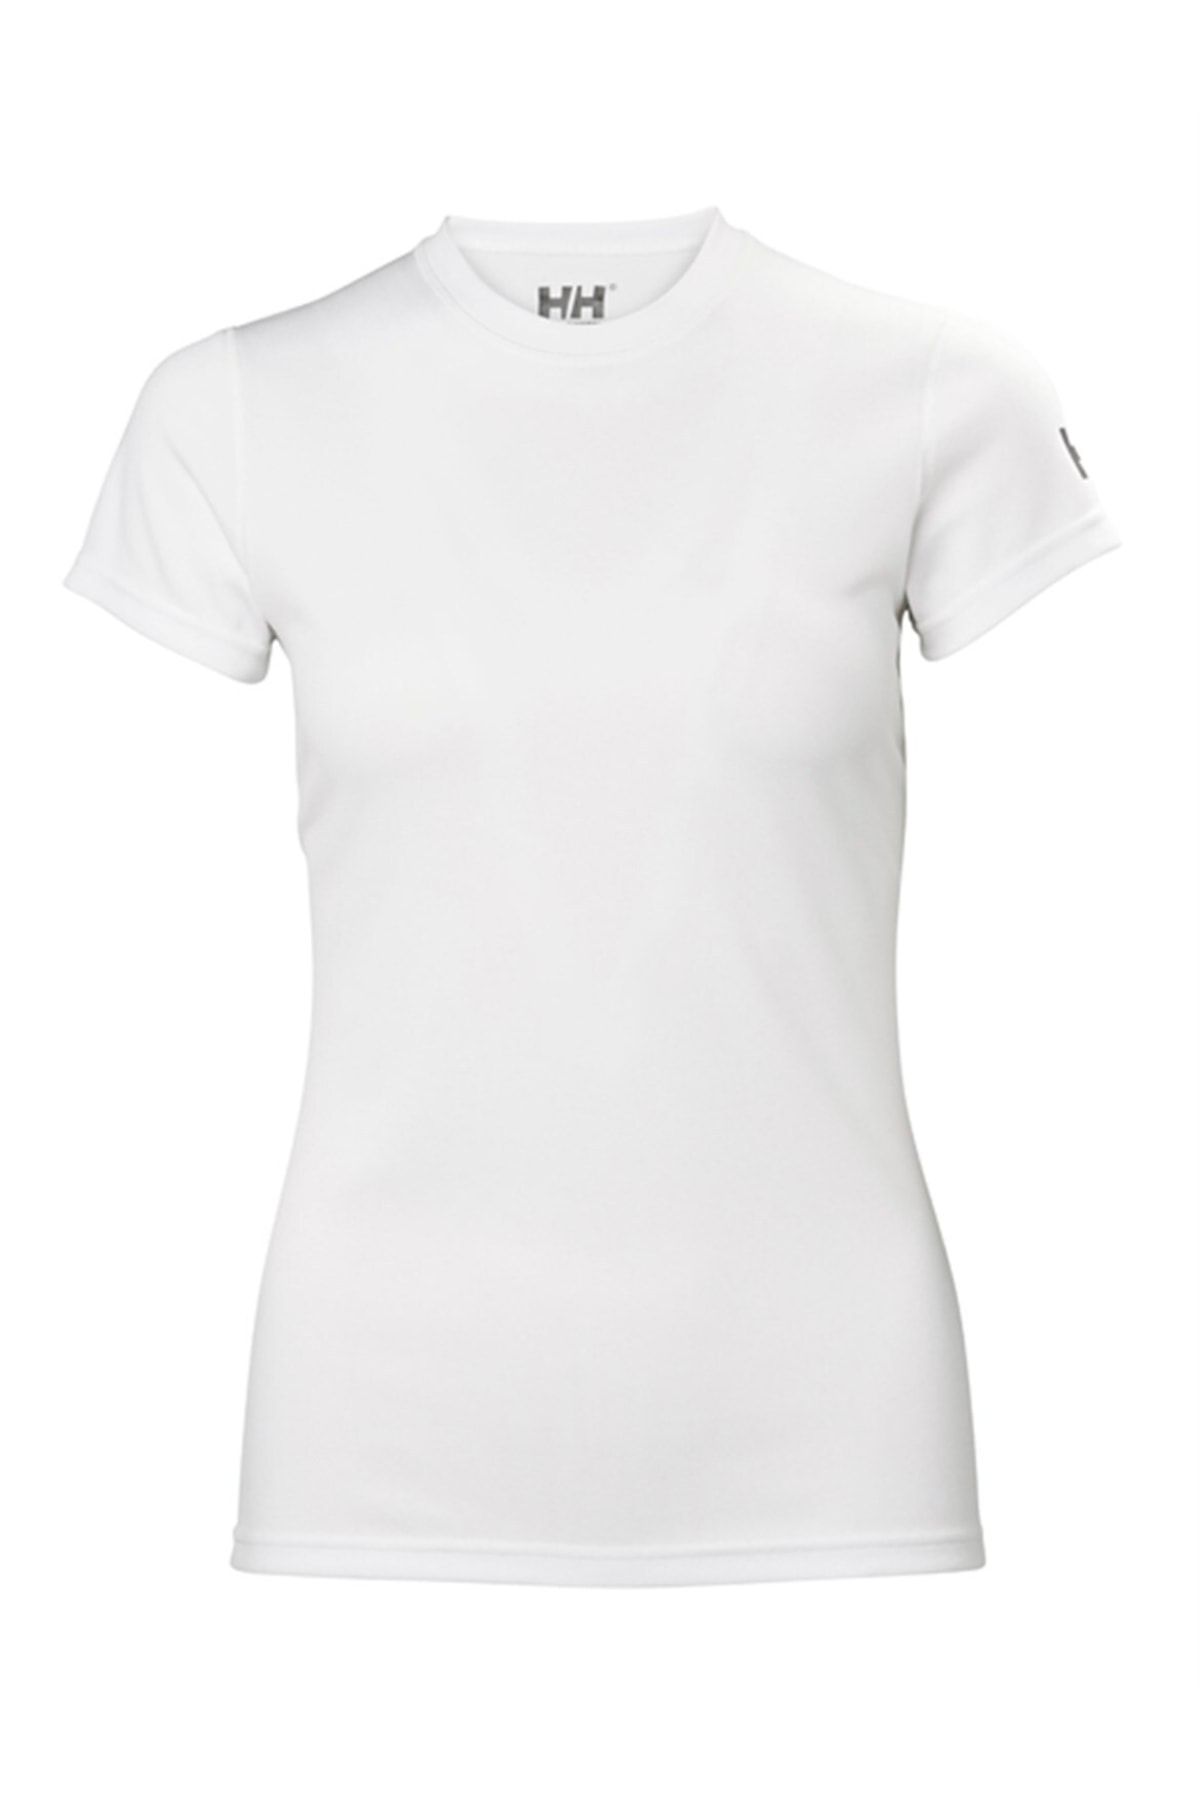 Helly Hansen W Techt Kadın T-shirt Beyaz